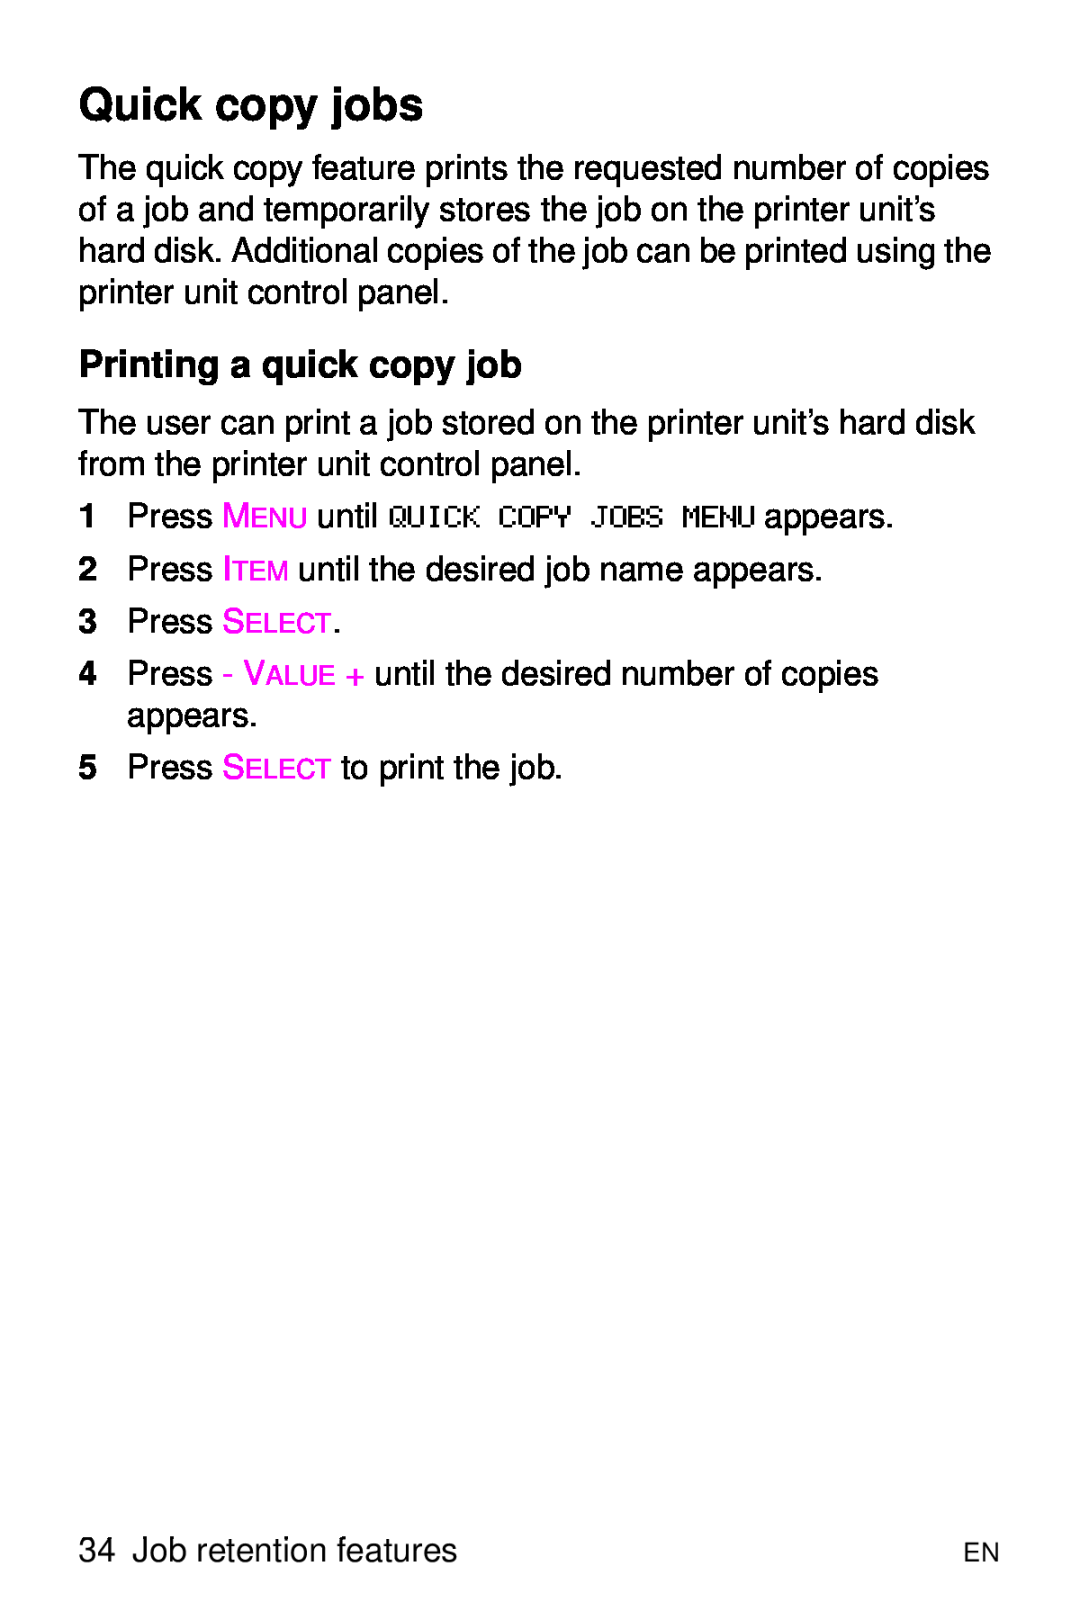 HP 8000 s manual Quick copy jobs, Printing a quick copy job, Press MENU until QUICK COPY JOBS MENU appears 